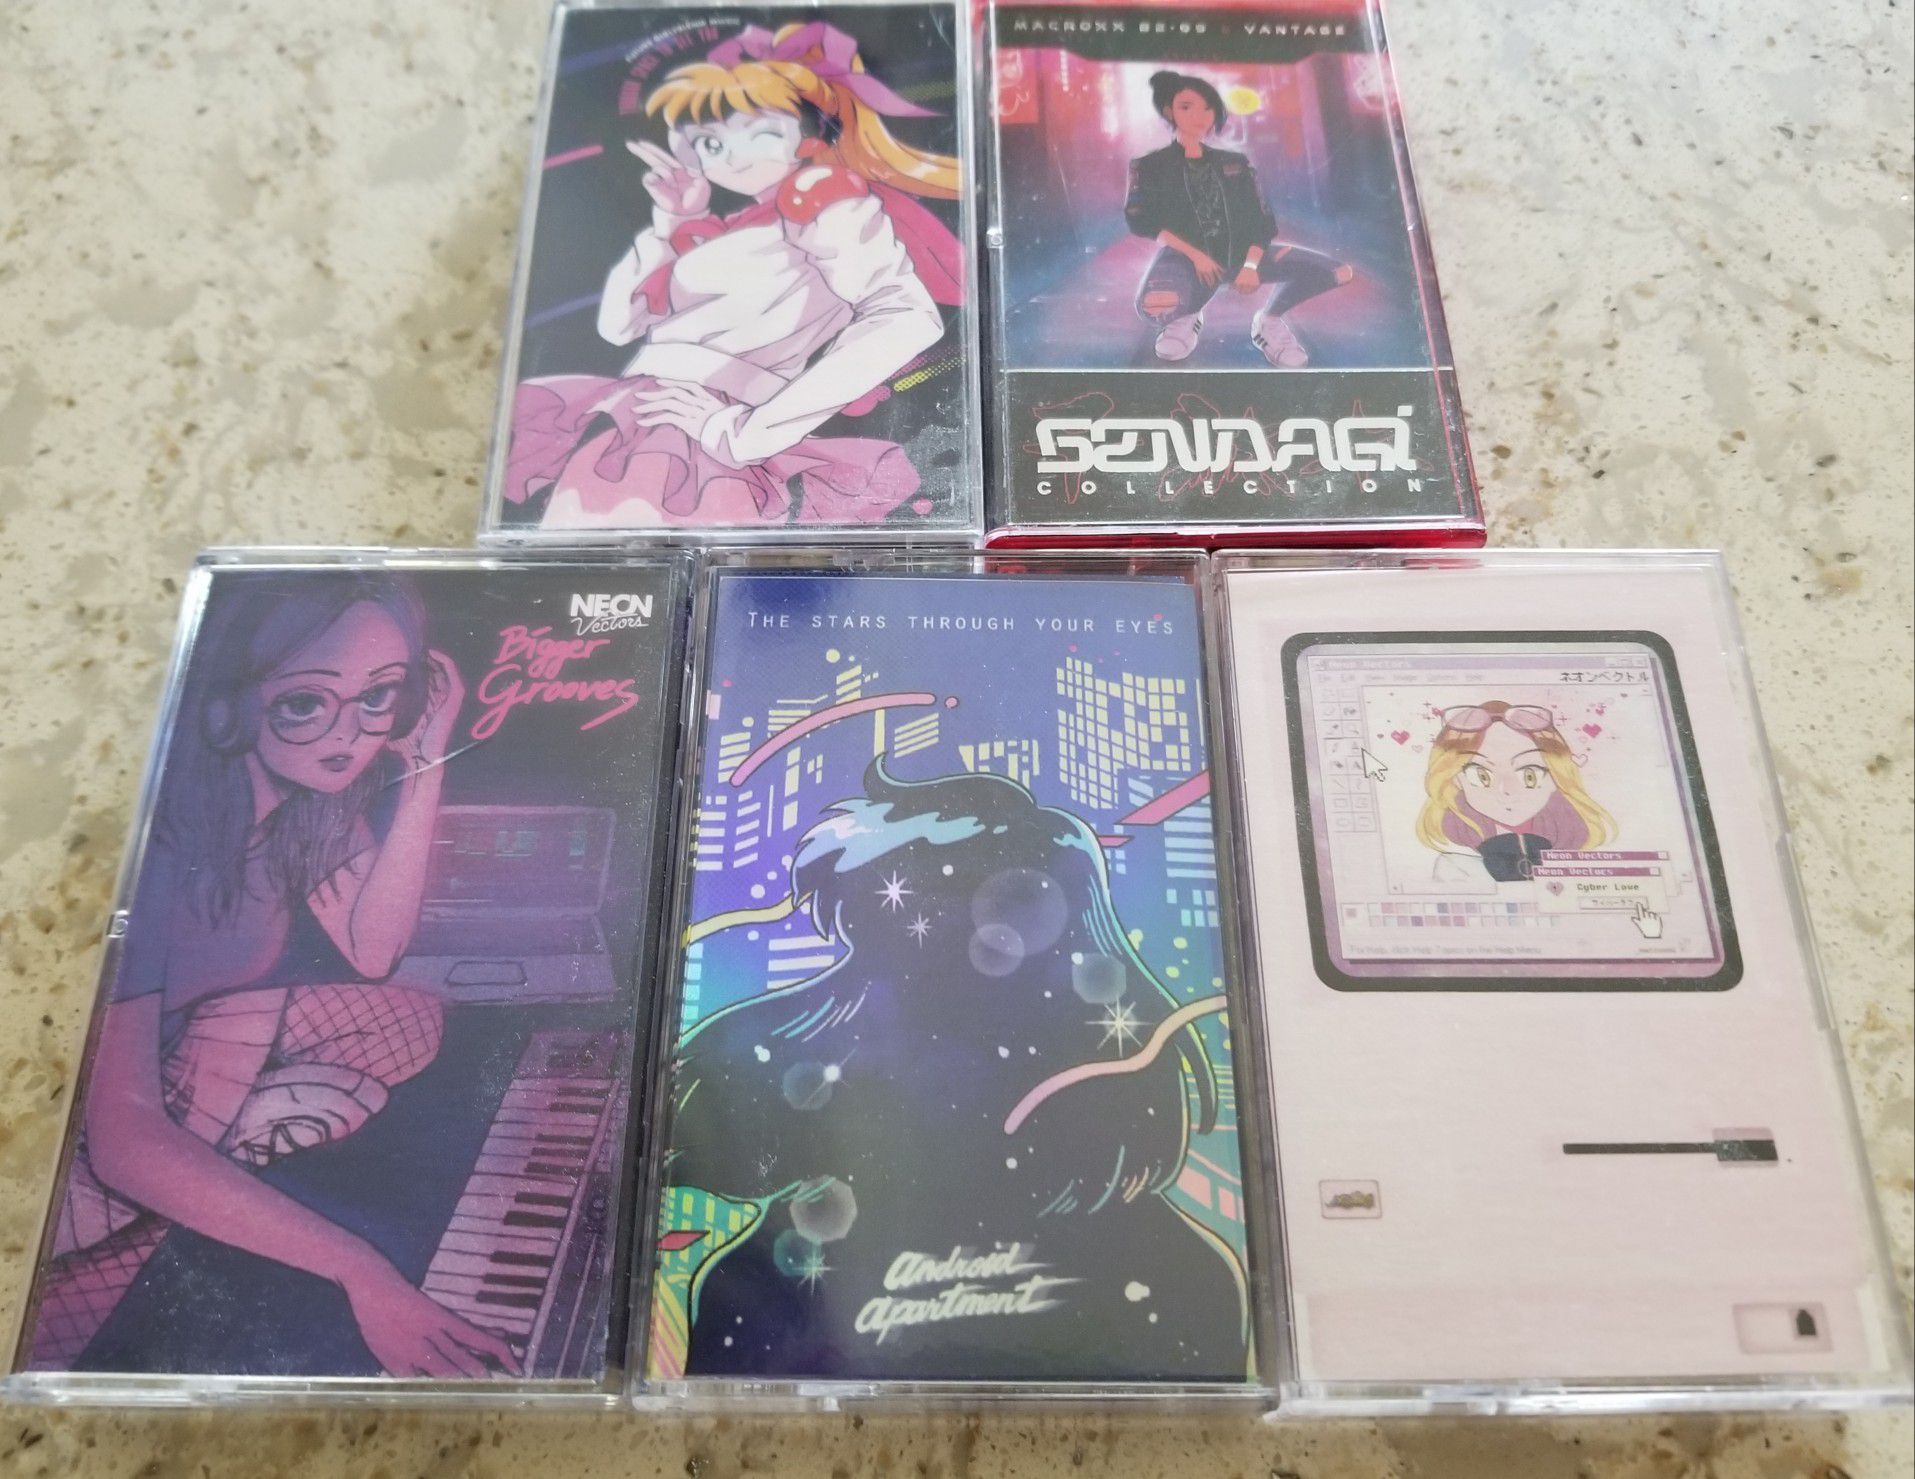 Neon City Records Future Funk City Pop Hip Hop Cassette Bundle Anime Sailor Moon Aesthetic